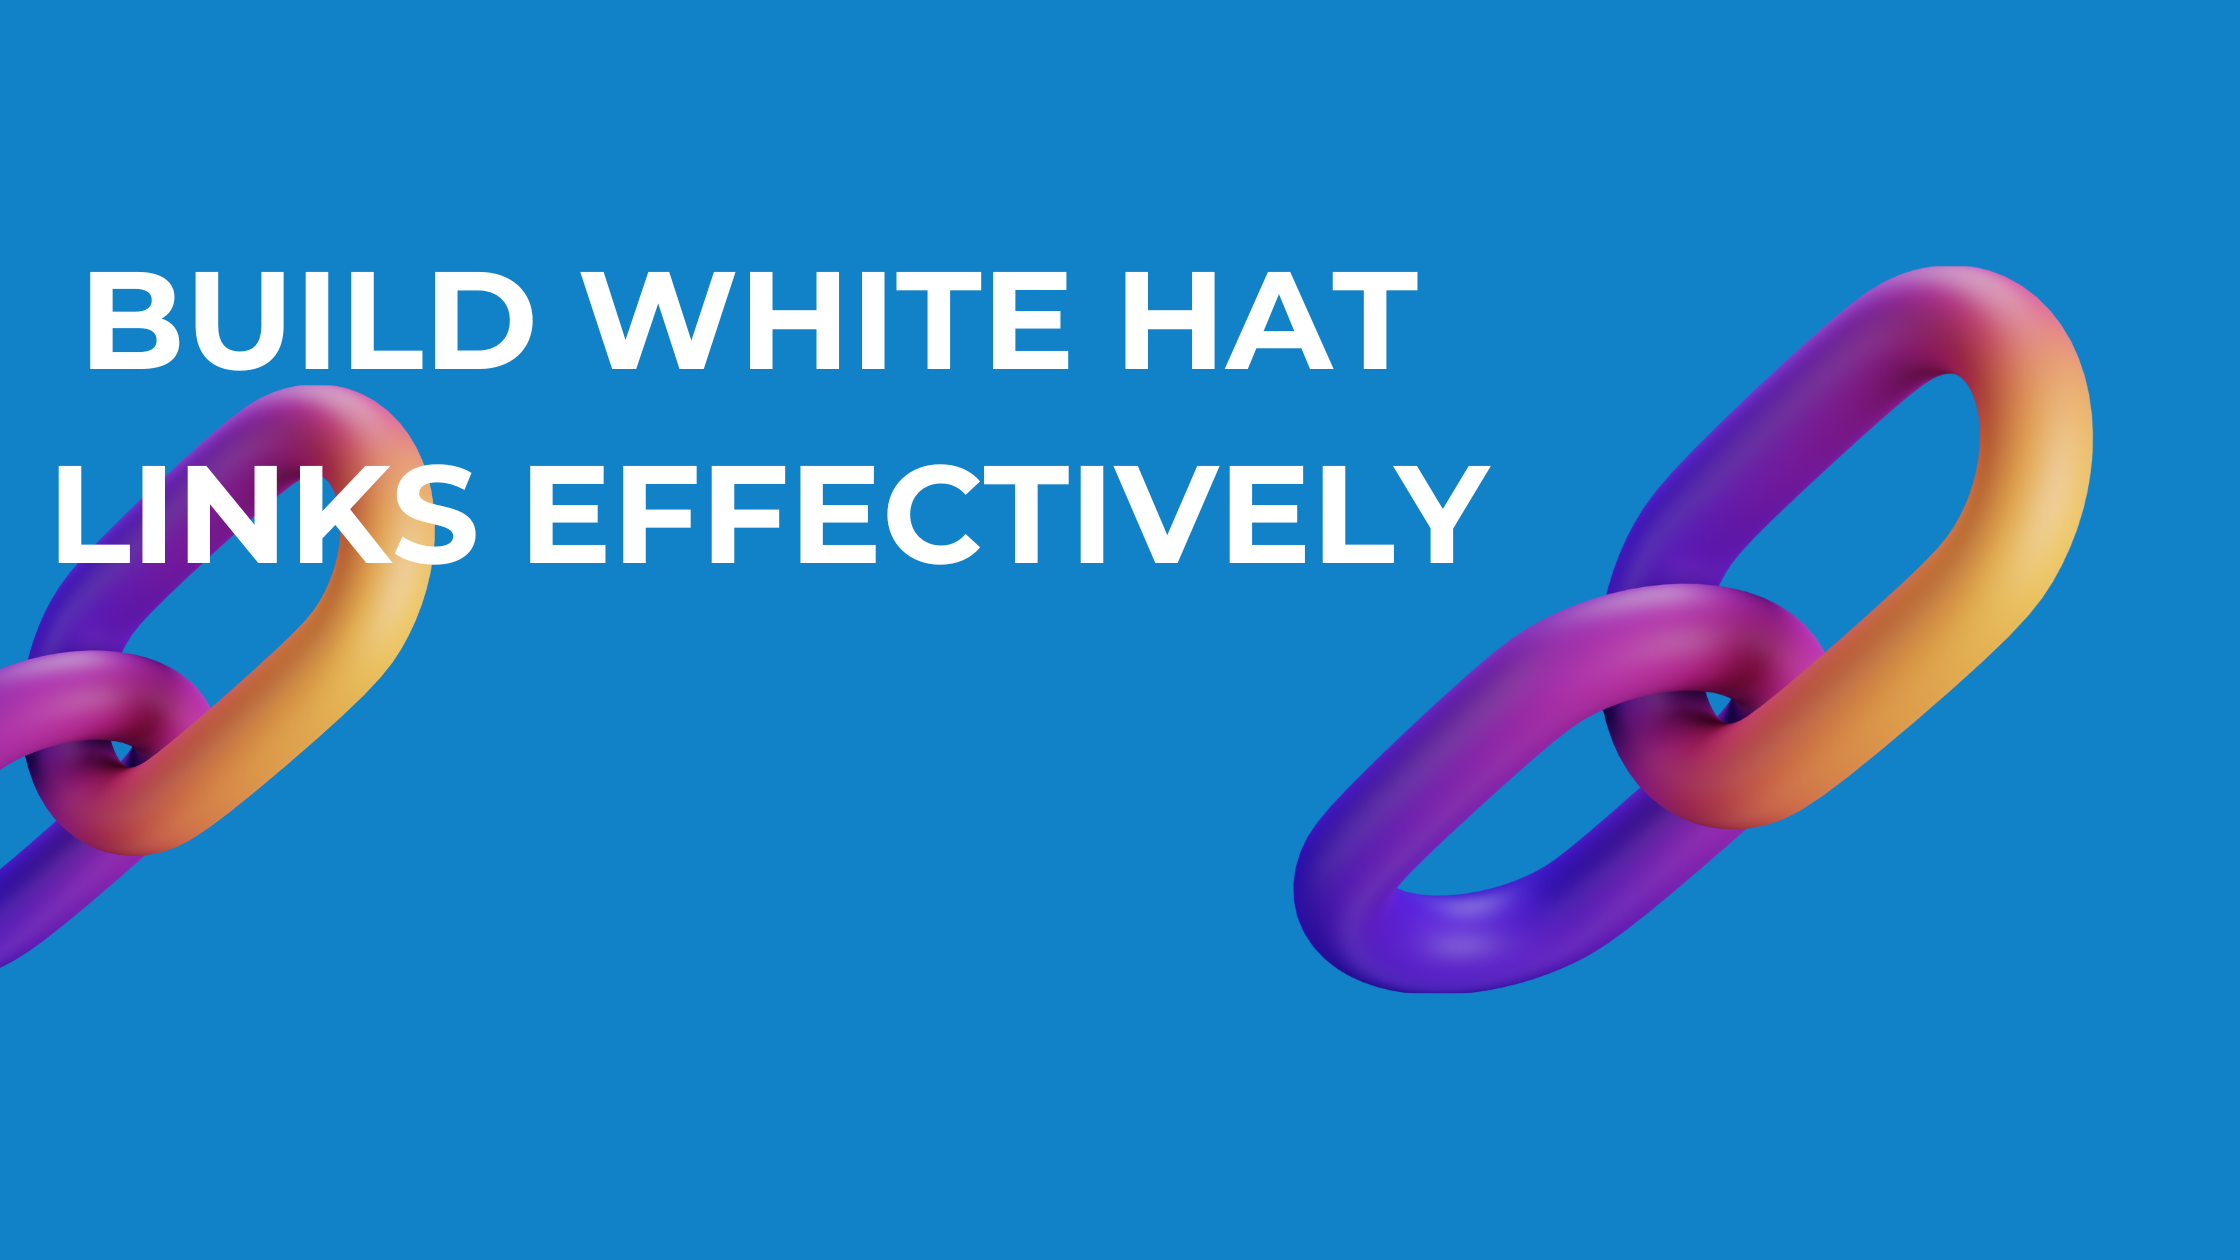 Built White hat Links